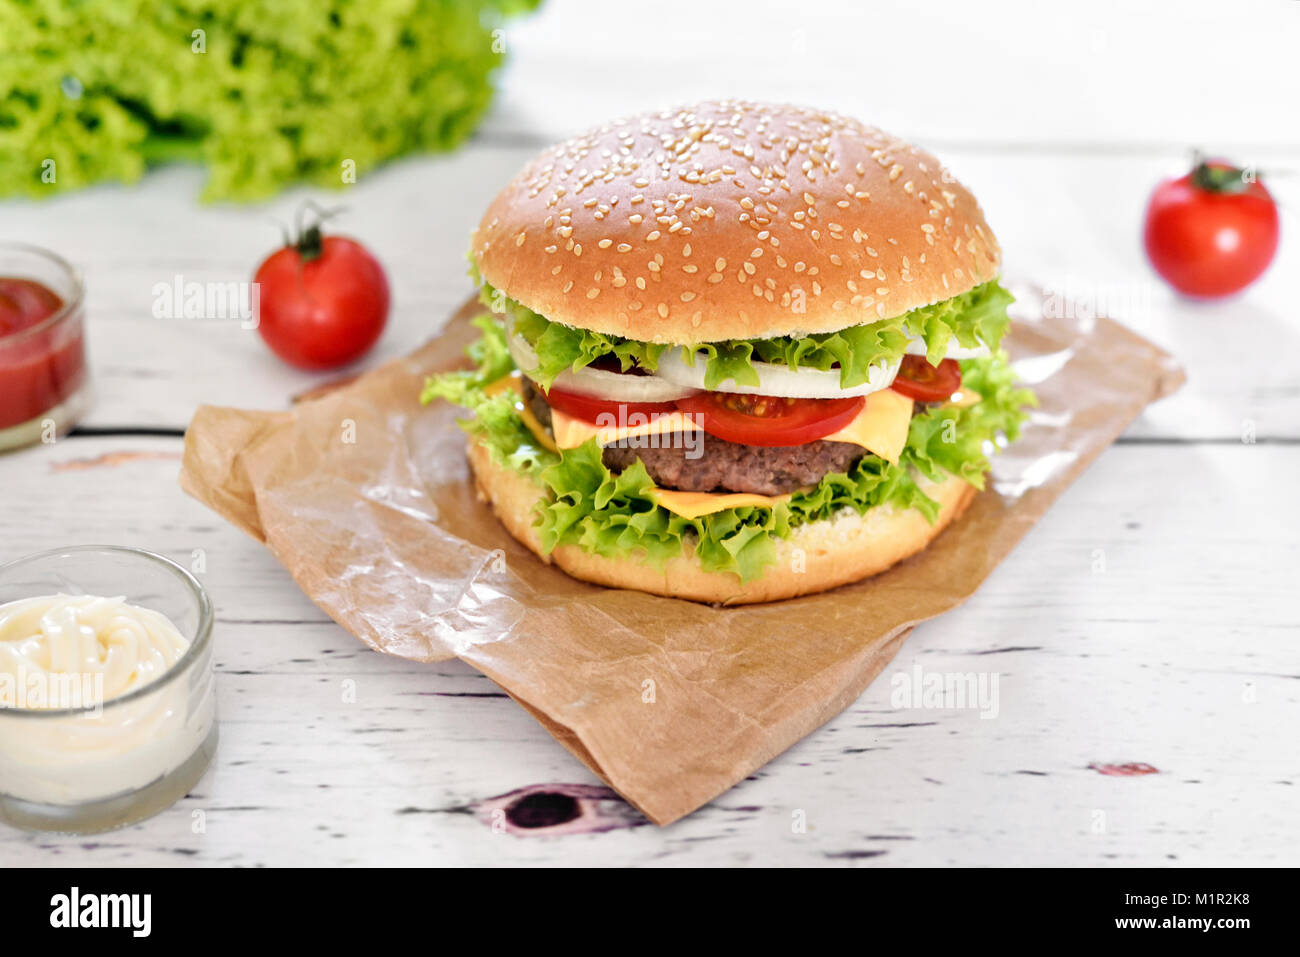 Gourmet Burger mit Soßen auf einem weißen Tisch. Hamburger oder Cheeseburger mit frischen Tomaten, Kopfsalat und Rindfleisch Patty, Fast food Hintergrund. Stockfoto